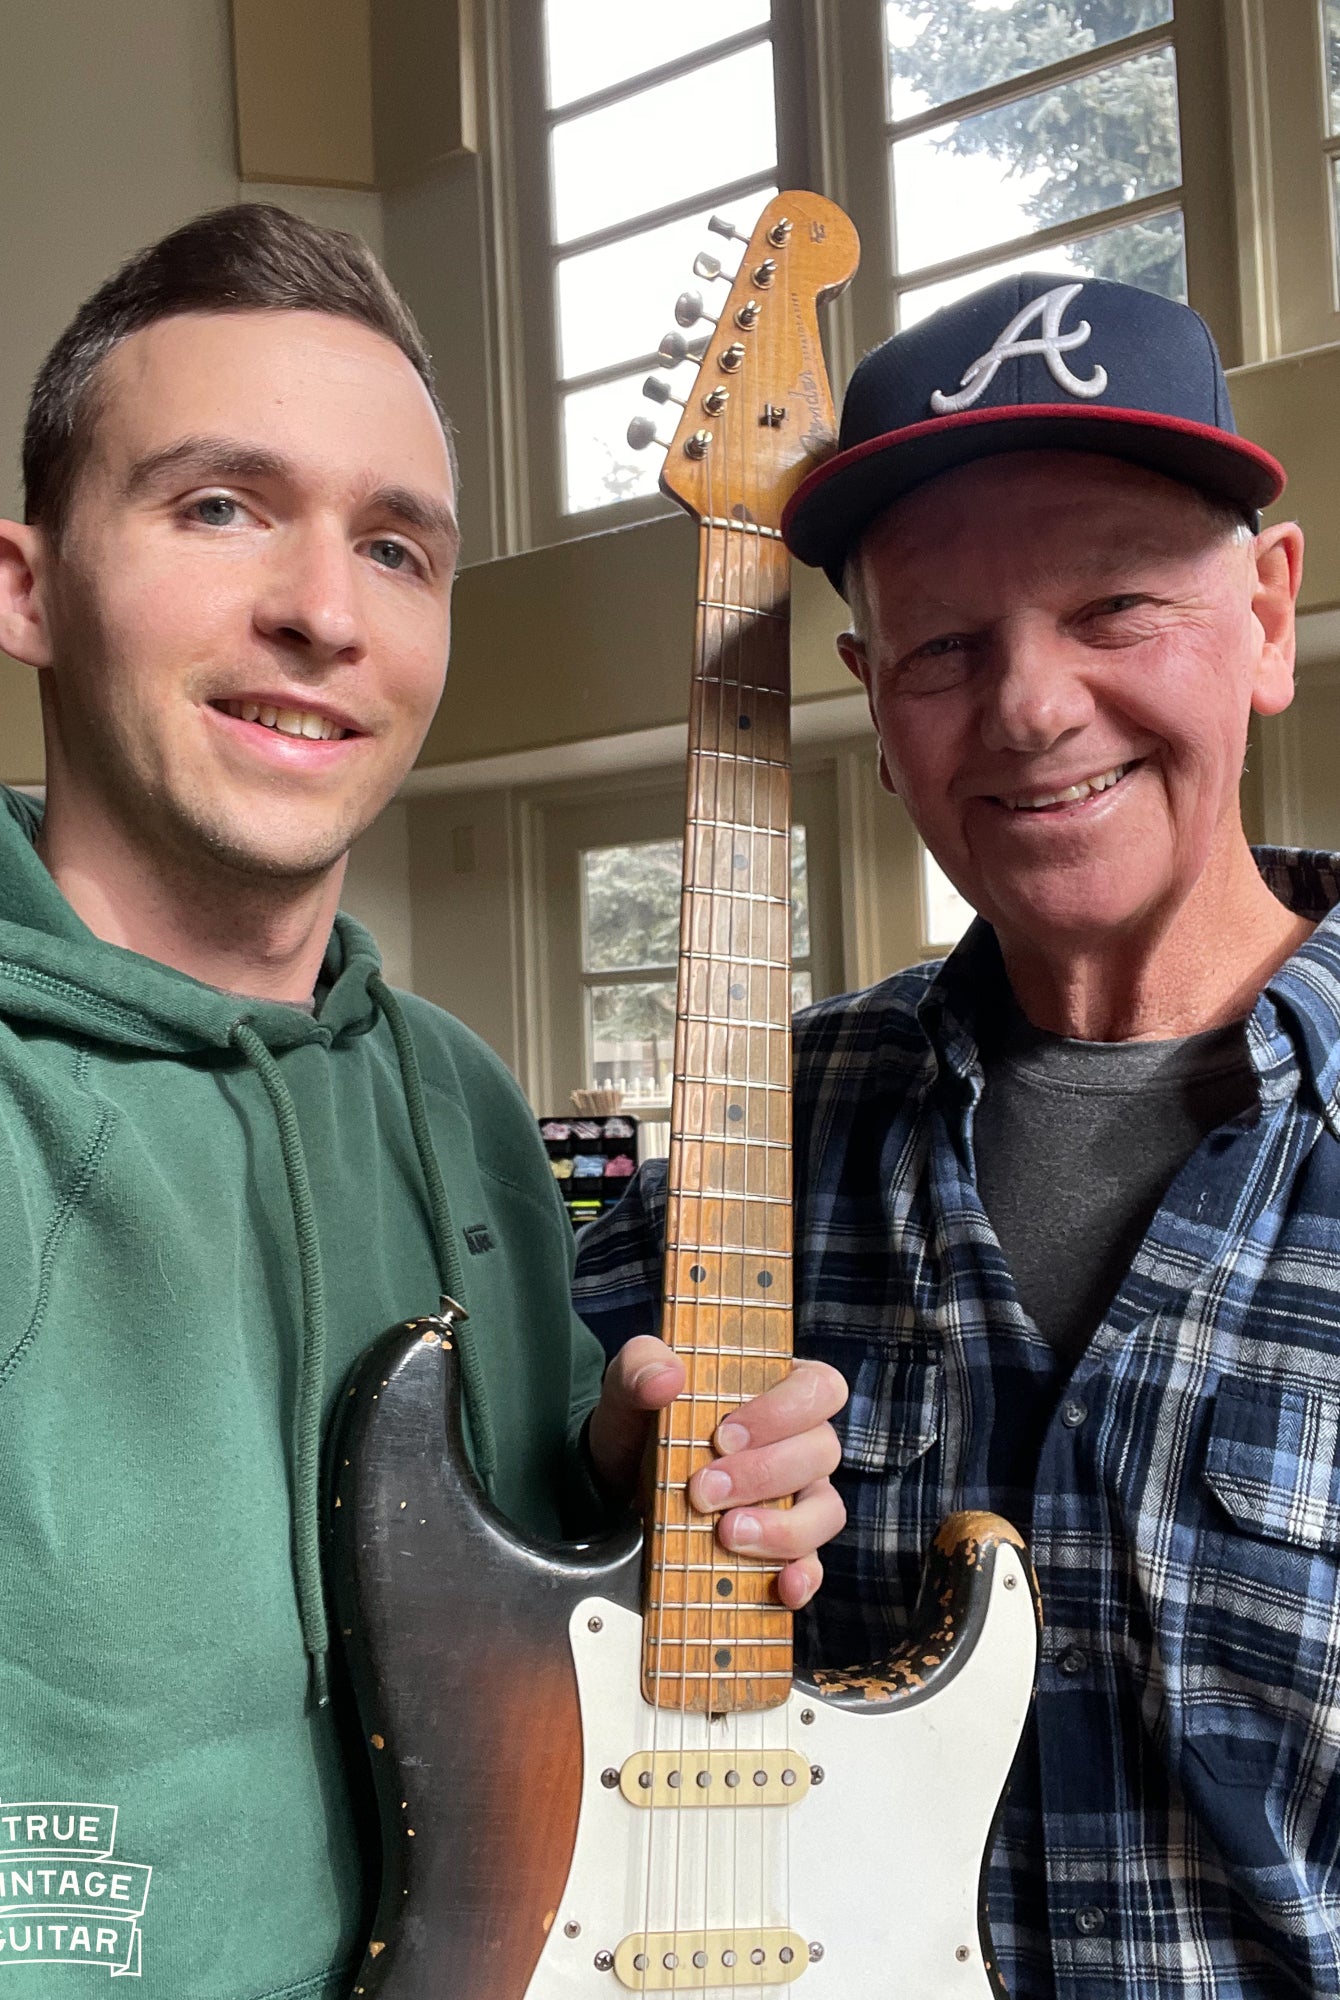 Fender guitar collector buys older Fender guitars